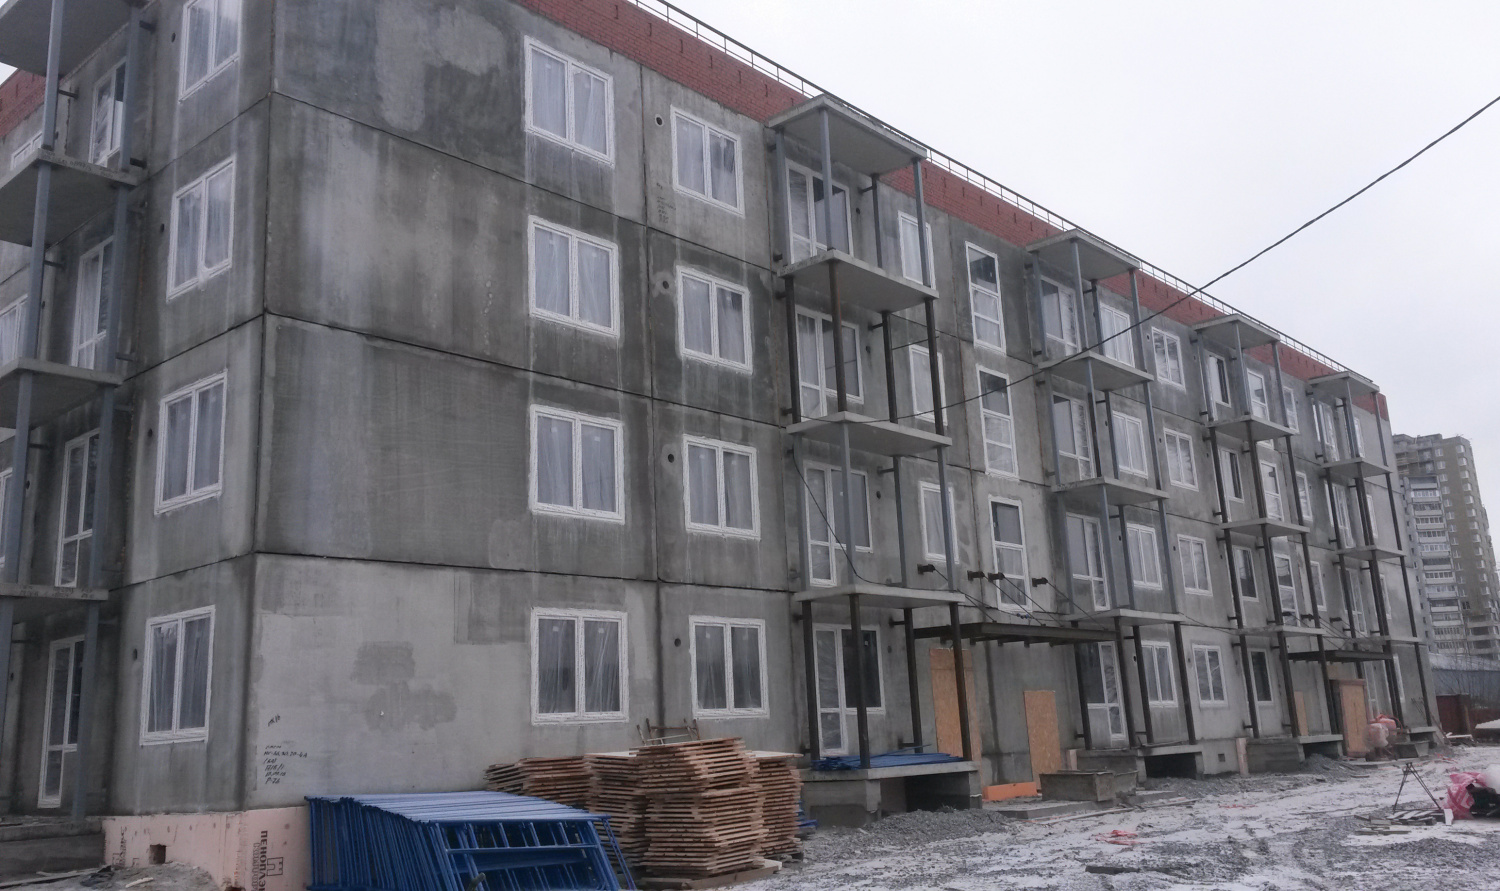 Многоквартирный жилой дом №2 по ул.Балтийской ЖК "Черника" отгружен